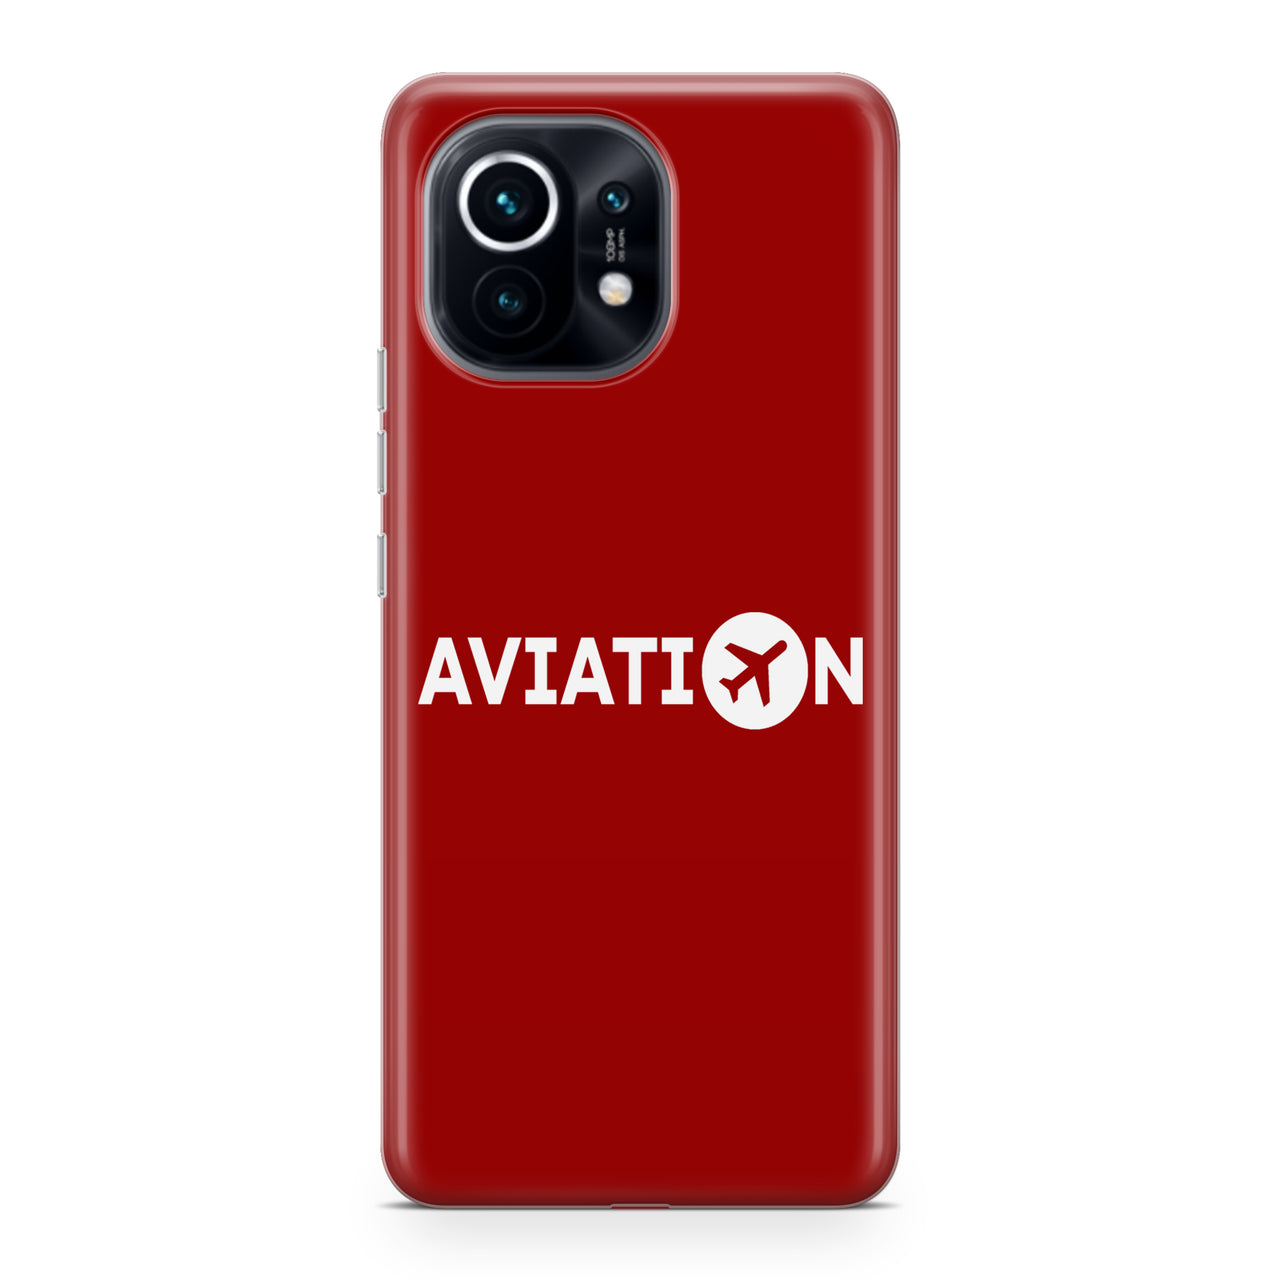 Aviation Designed Xiaomi Cases